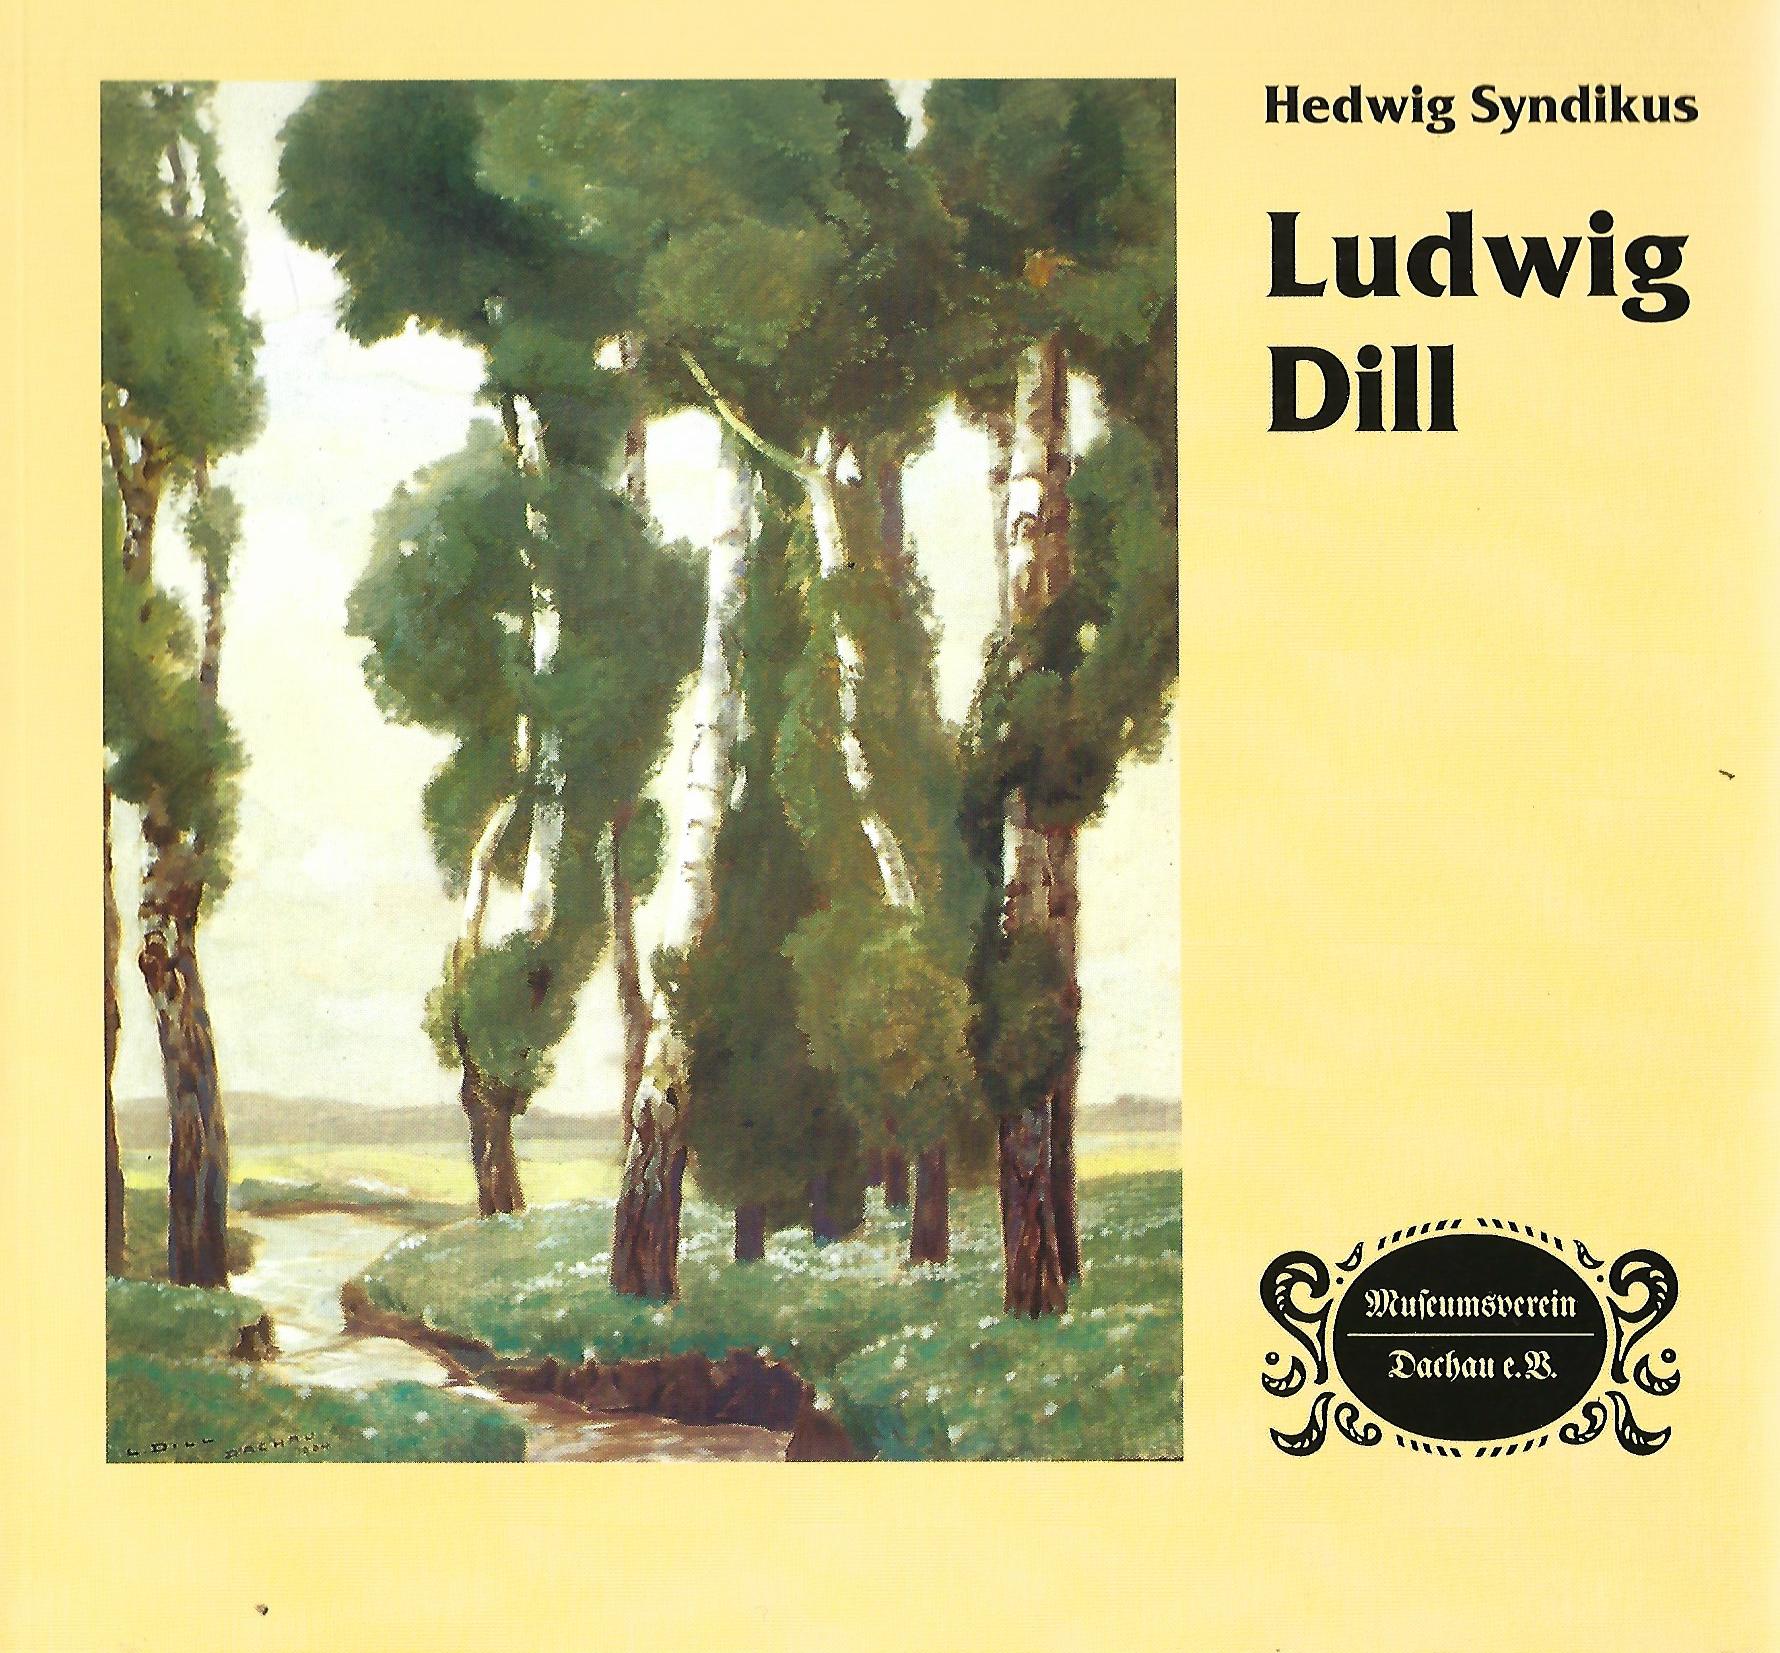 Ludwig Dill (1848 - 1940). Katalog zu einer Ausstellung im Dachauer Schloß im Jahre 1998. - Syndikus, Hedwig